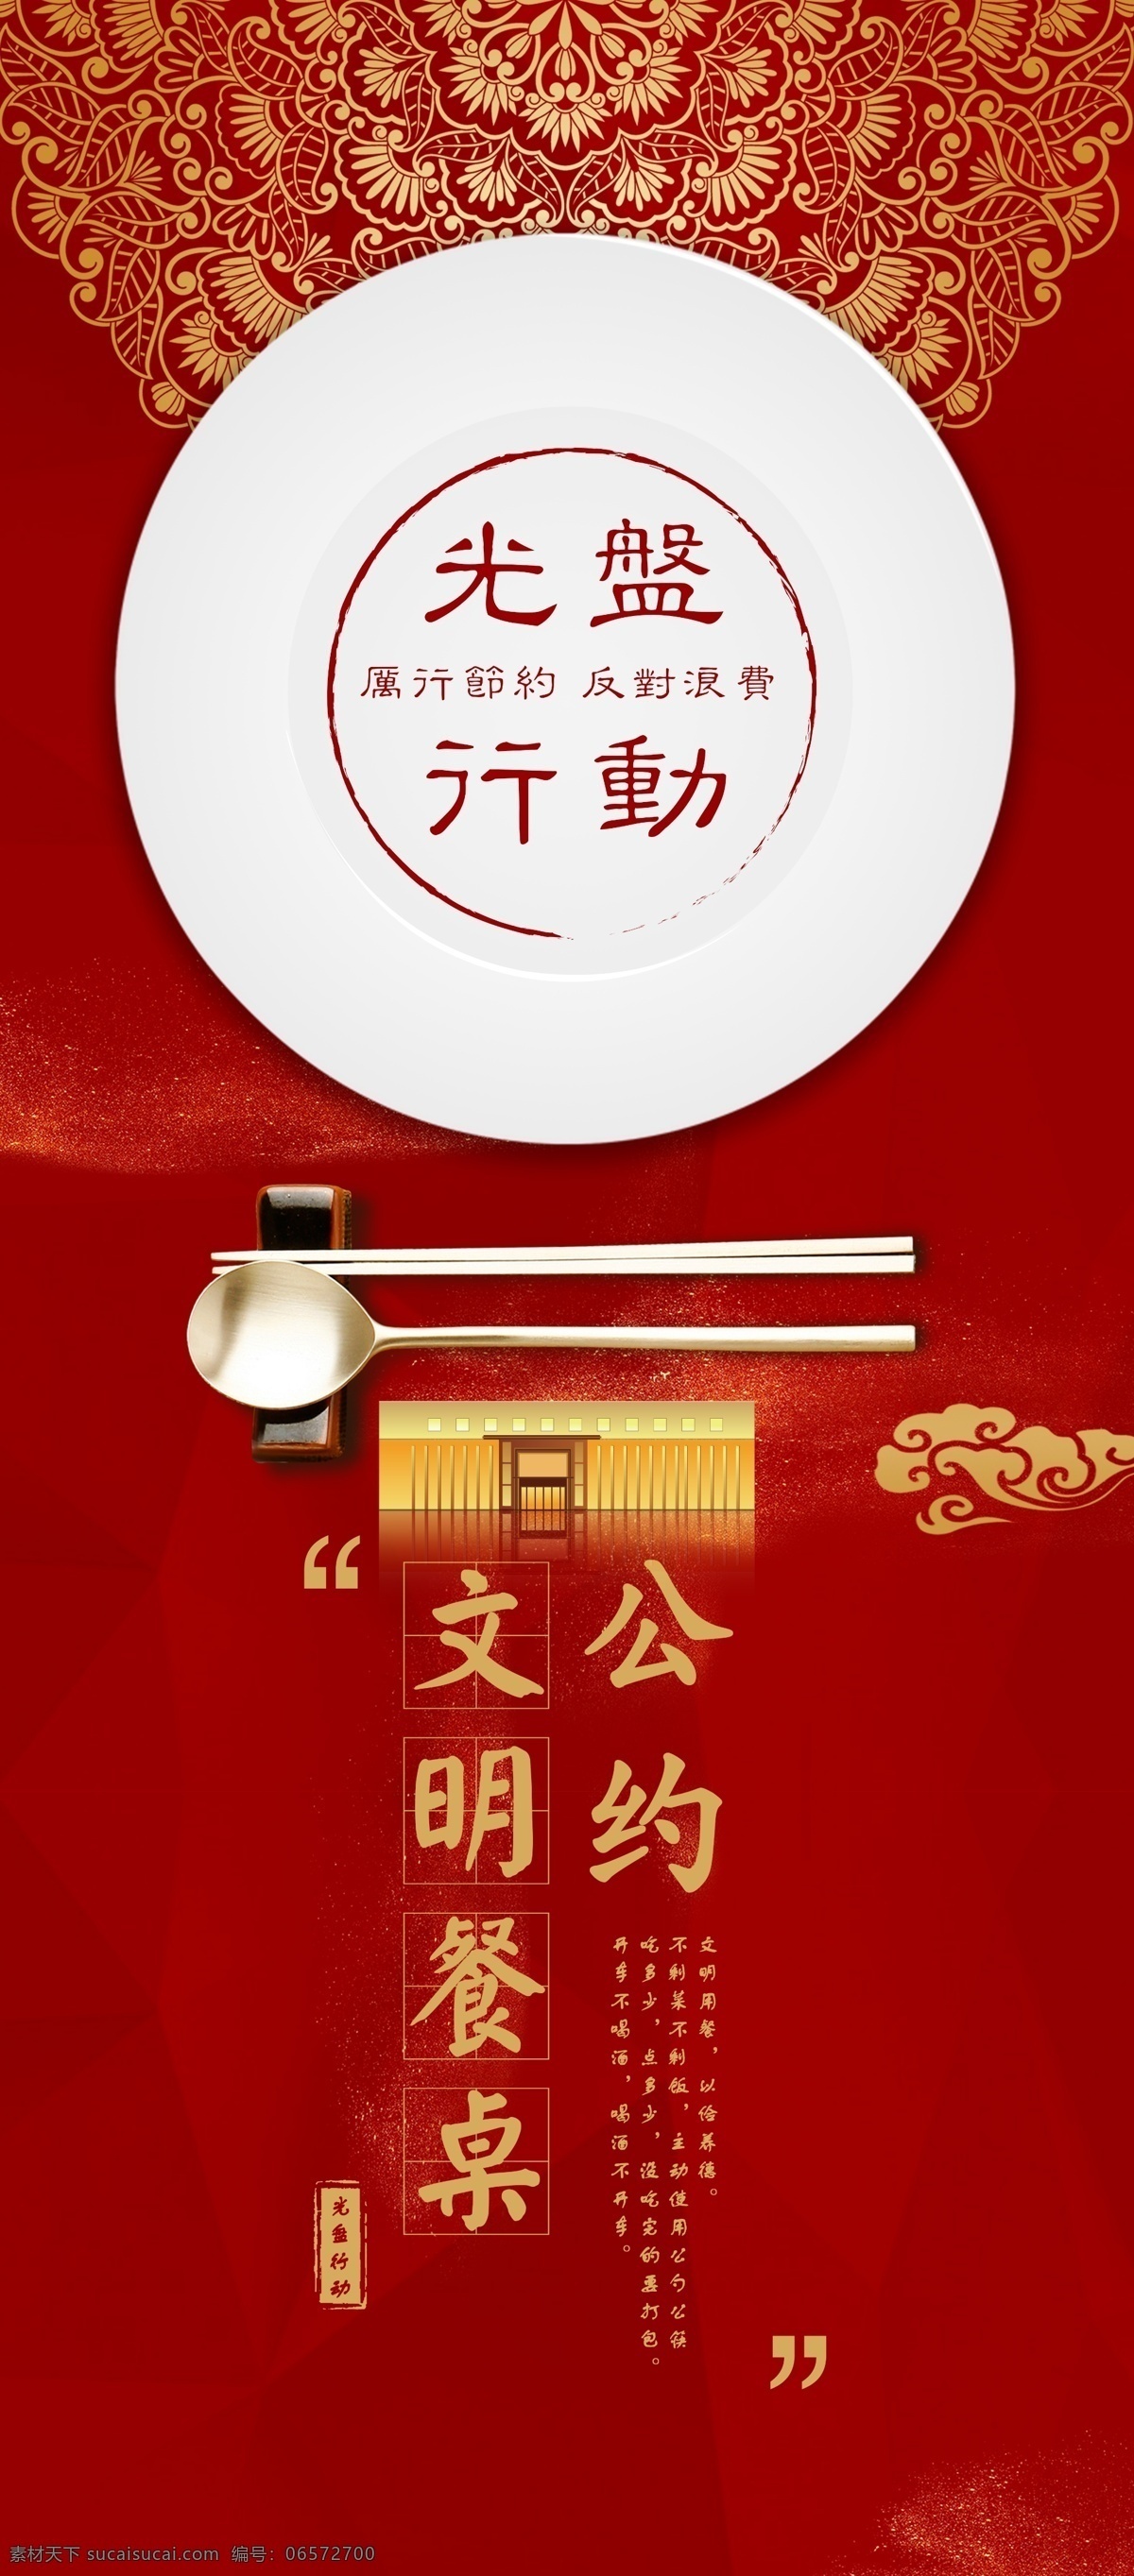 光盘行动 公勺公筷 文明用餐公约 红色 大气 酒店